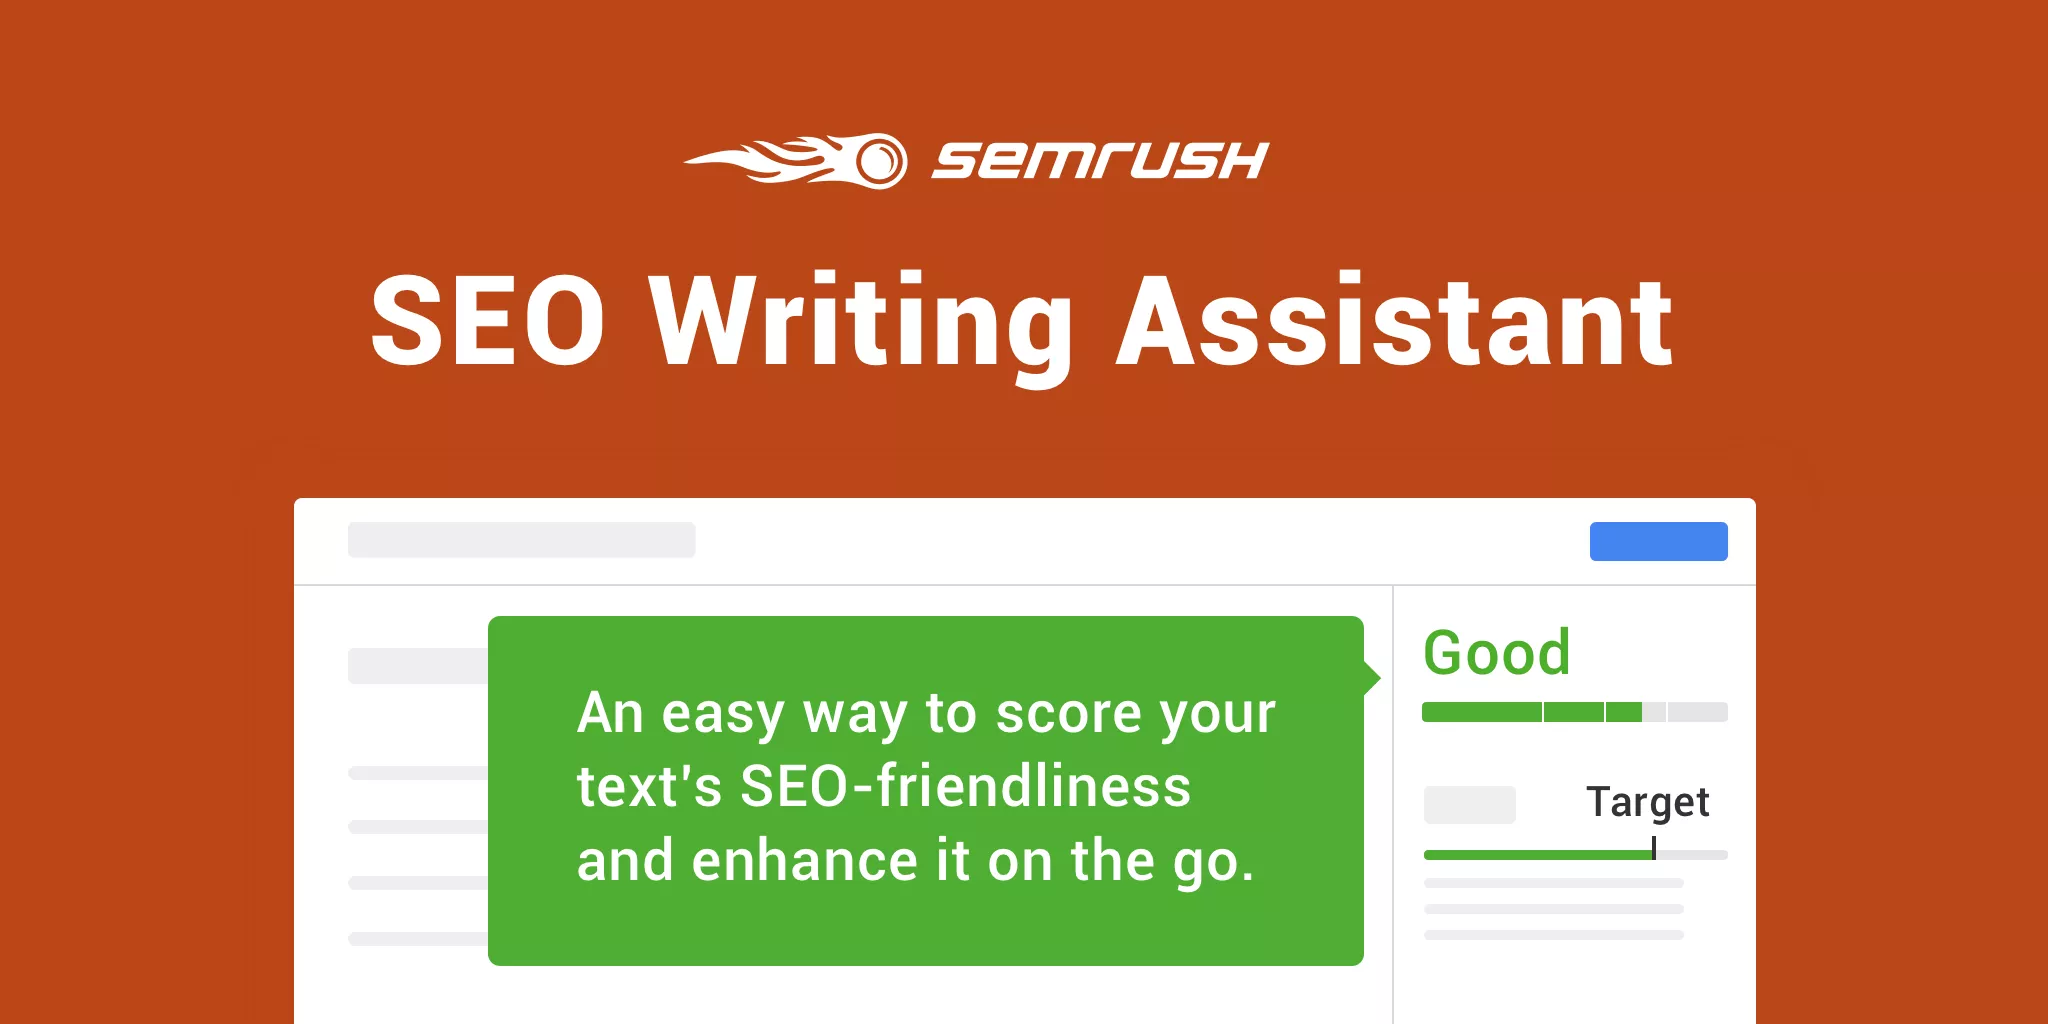 Semrush seo writing assistant tool